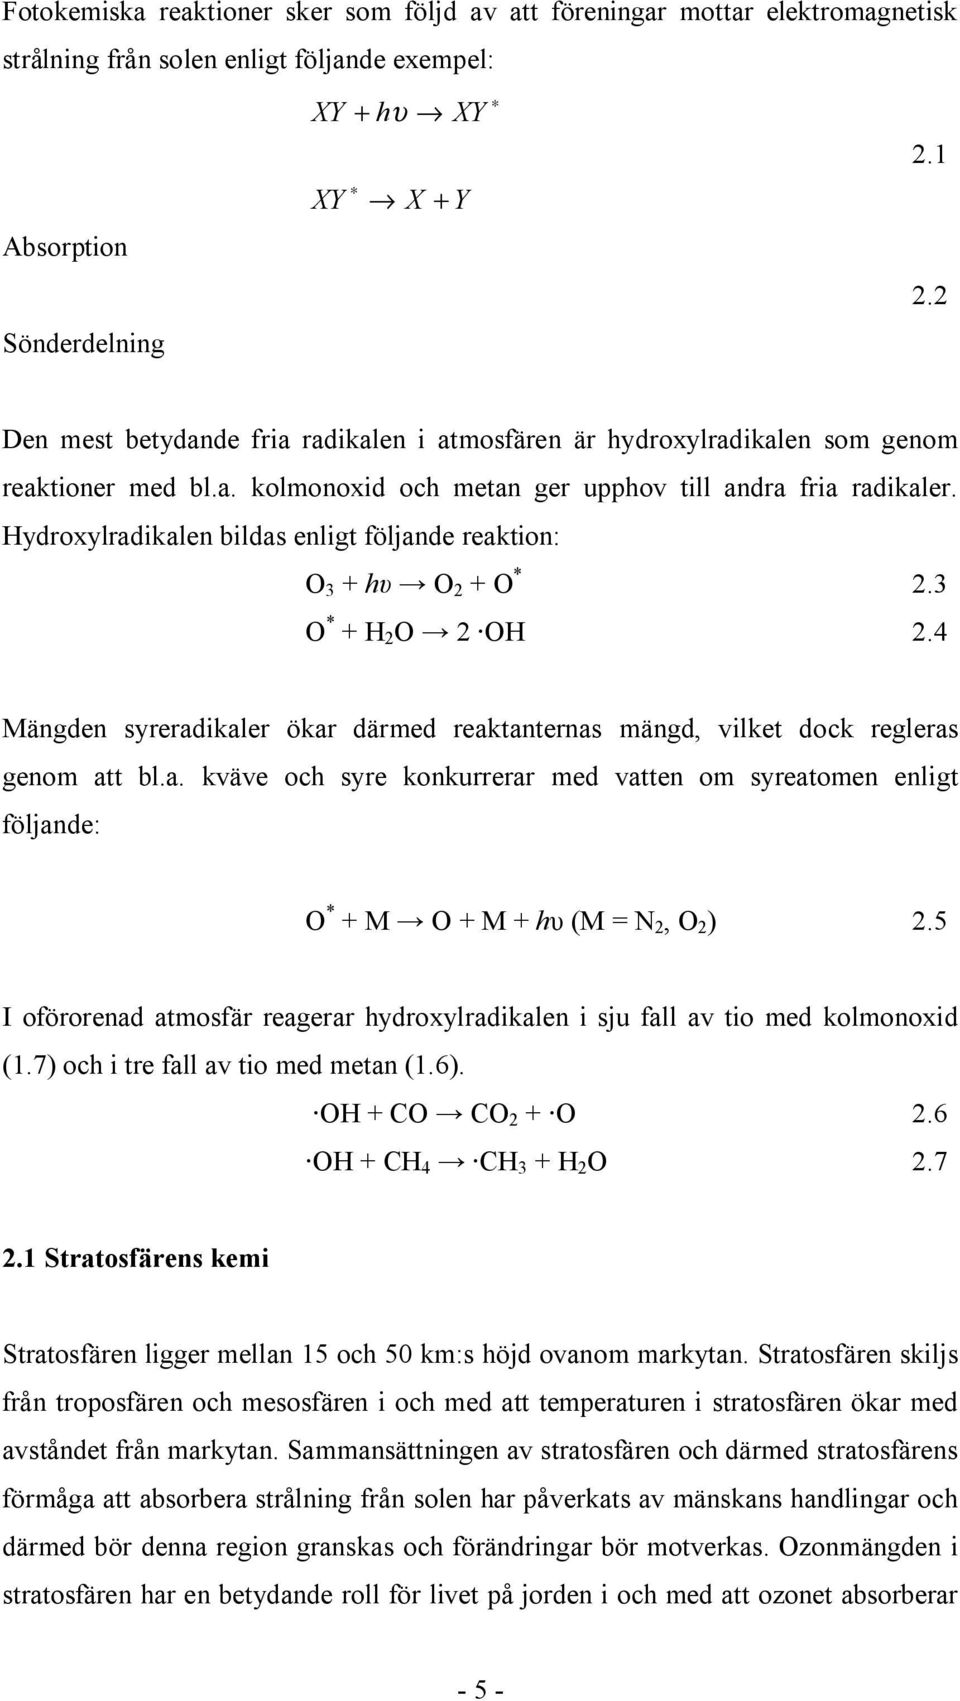 Hydroxylradikalen bildas enligt följande reaktion: O 3 + O 2 + O * 2.3 O * + H 2 O 2 OH 2.4 Mängden syreradikaler ökar därmed reaktanternas mängd, vilket dock regleras genom att bl.a. kväve och syre konkurrerar med vatten om syreatomen enligt följande: O * + M O + M + h (M = N 2, O 2 ) 2.